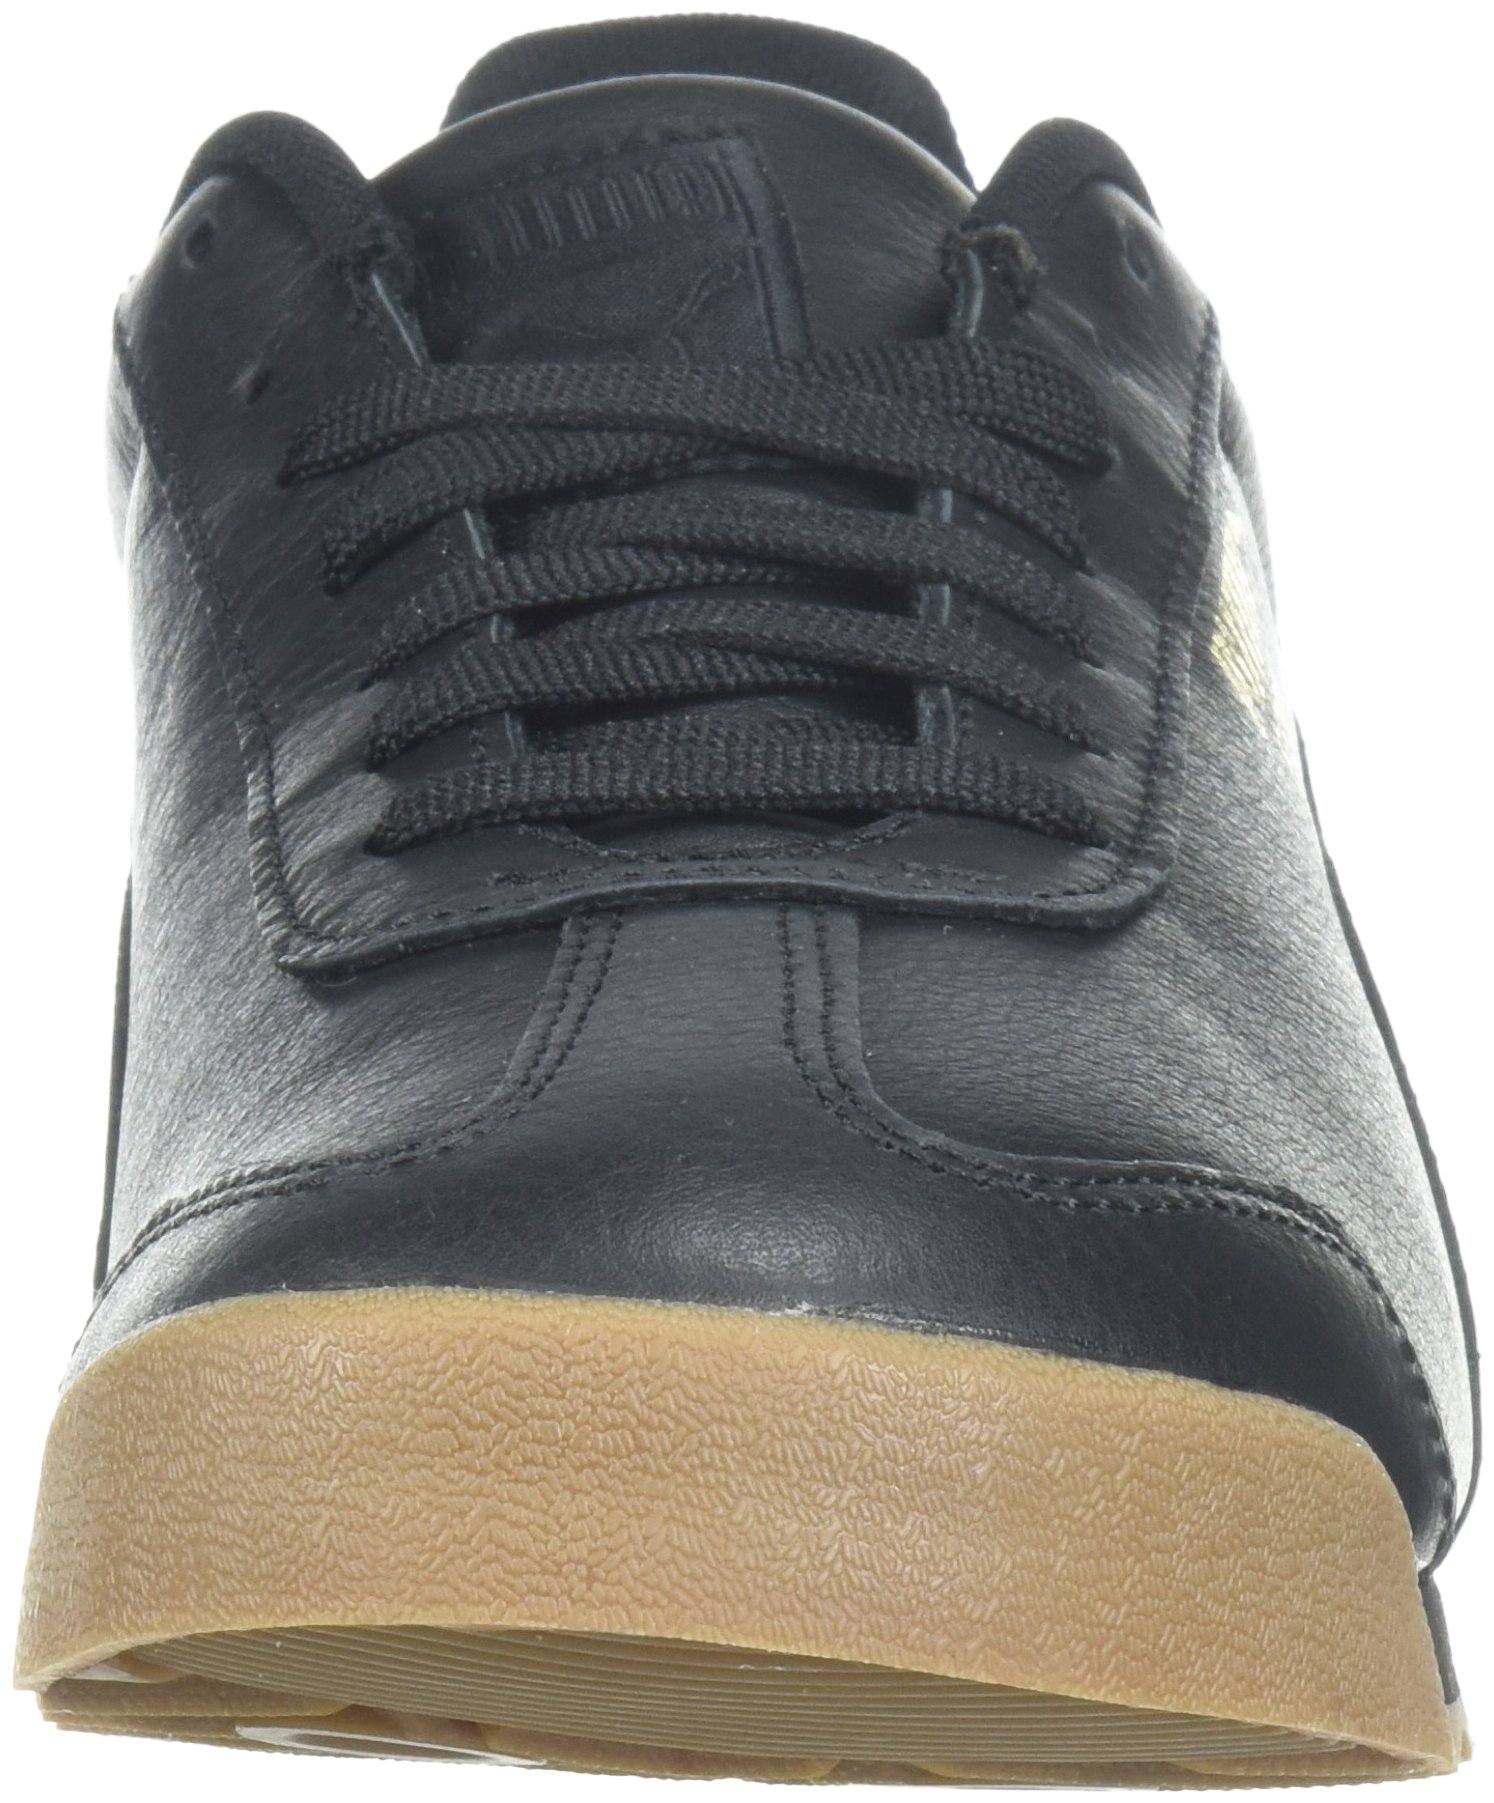 PUMA 366408-02 : Men's Roma Classic Gum Sneaker Black Team Gold (10 D(M) US) - image 2 of 8